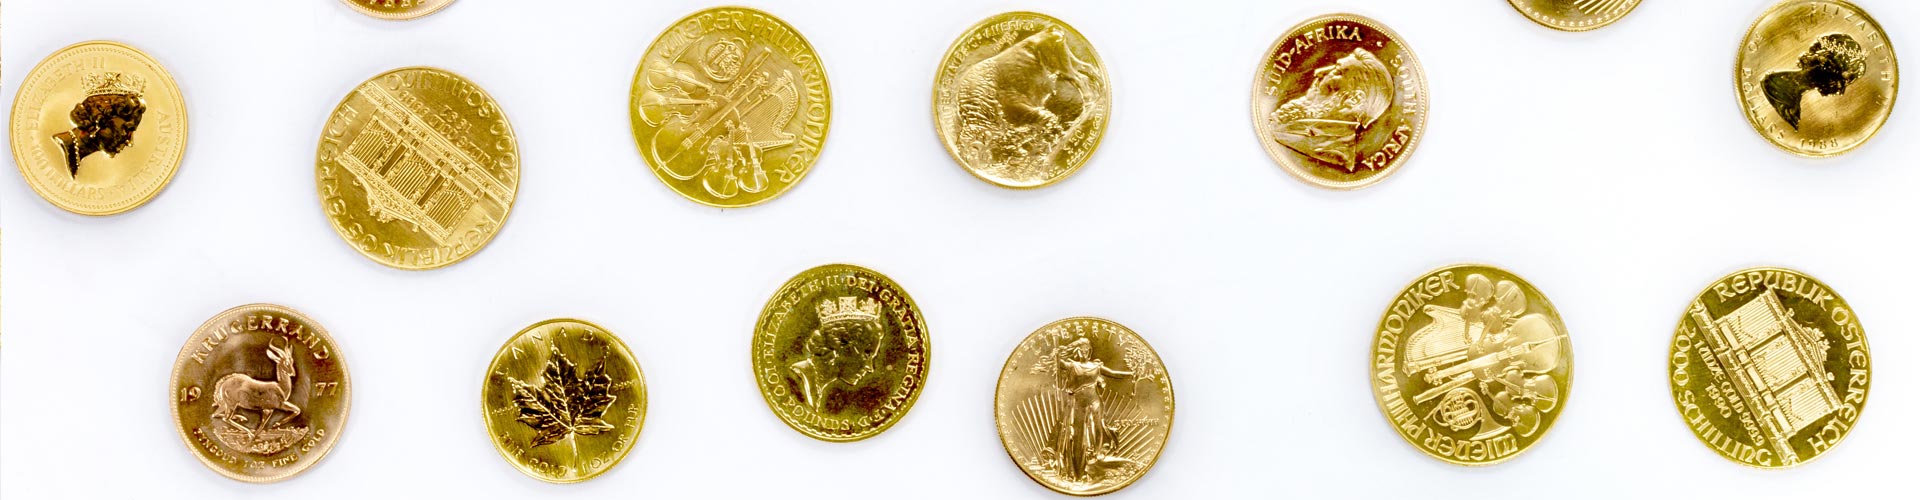 Verschiedene Goldmünzen und Goldanlagemünzen unter anderem Krügerrand und Wiener Philharmoniker